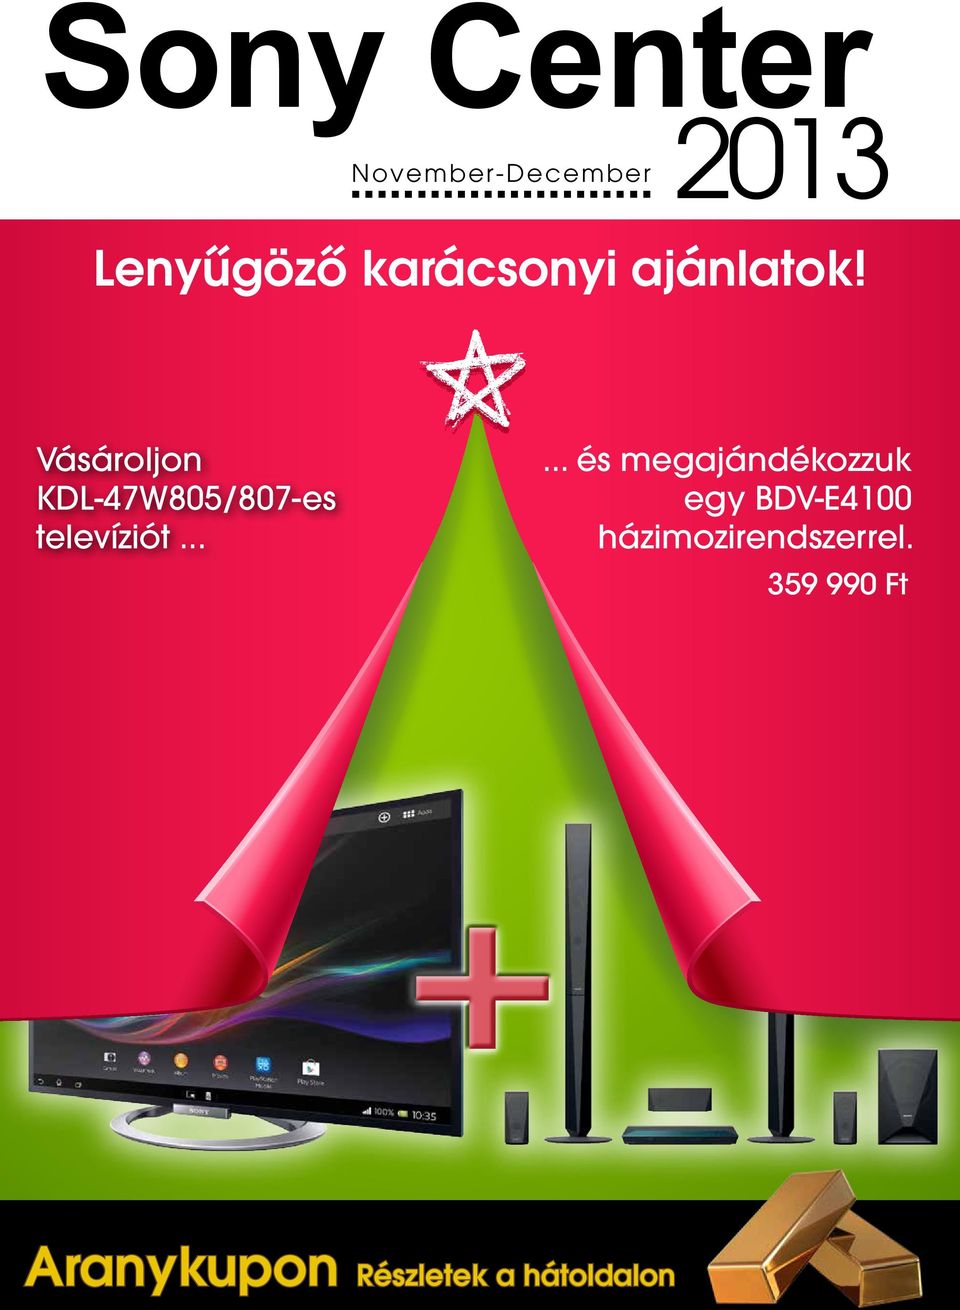 Vásárolj KDL 47W805/807-es televíziót.